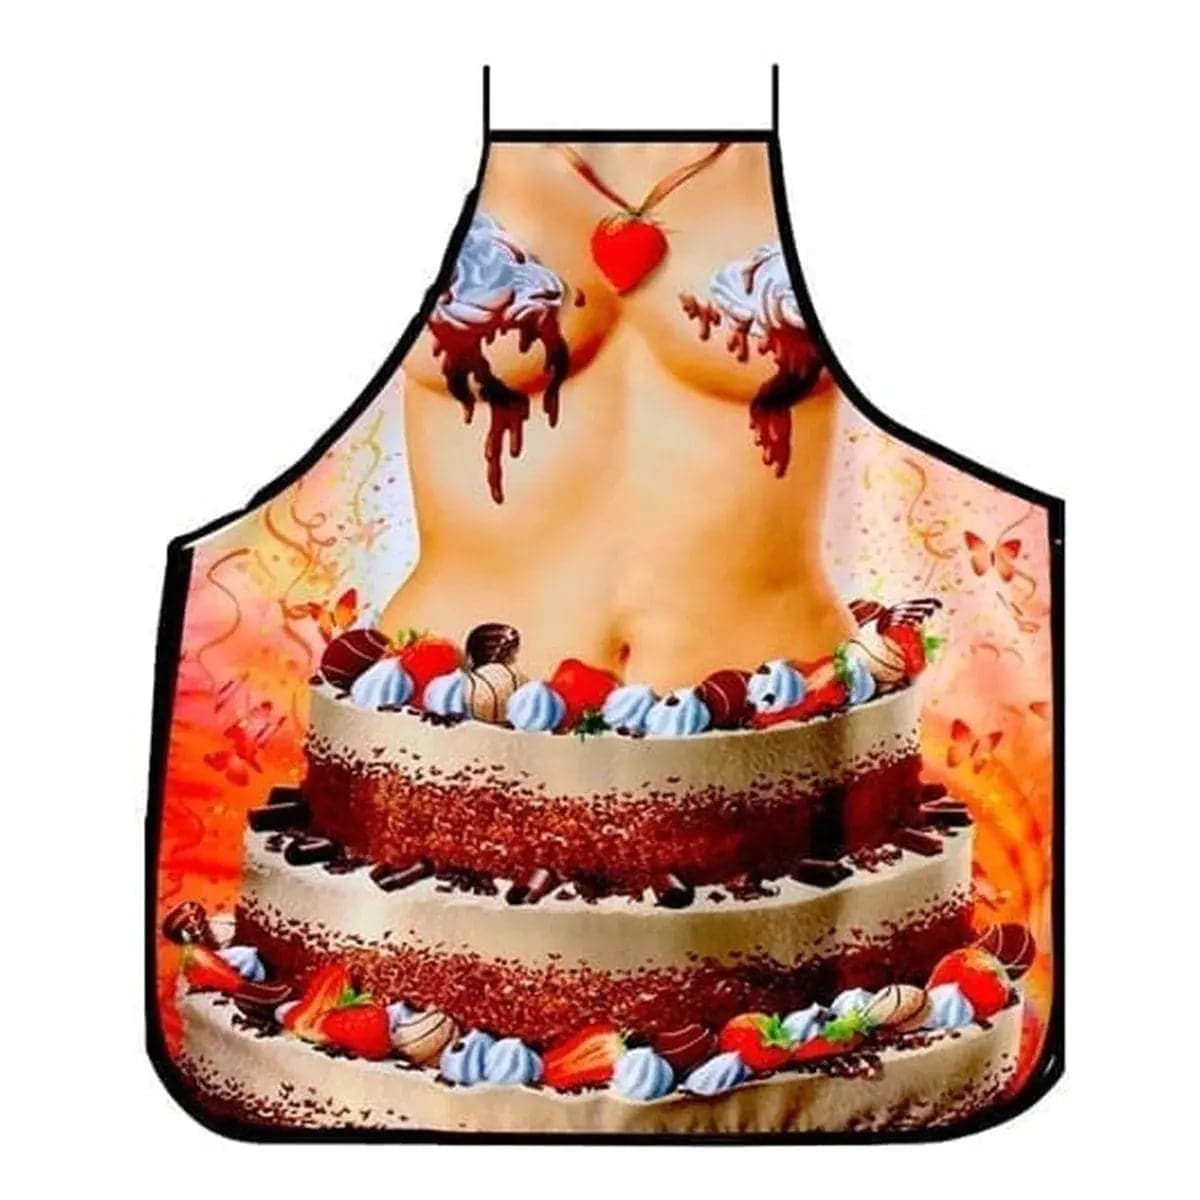 Avental Bolo de Aniversário com Corpo de Mulher - Pérola SexShop